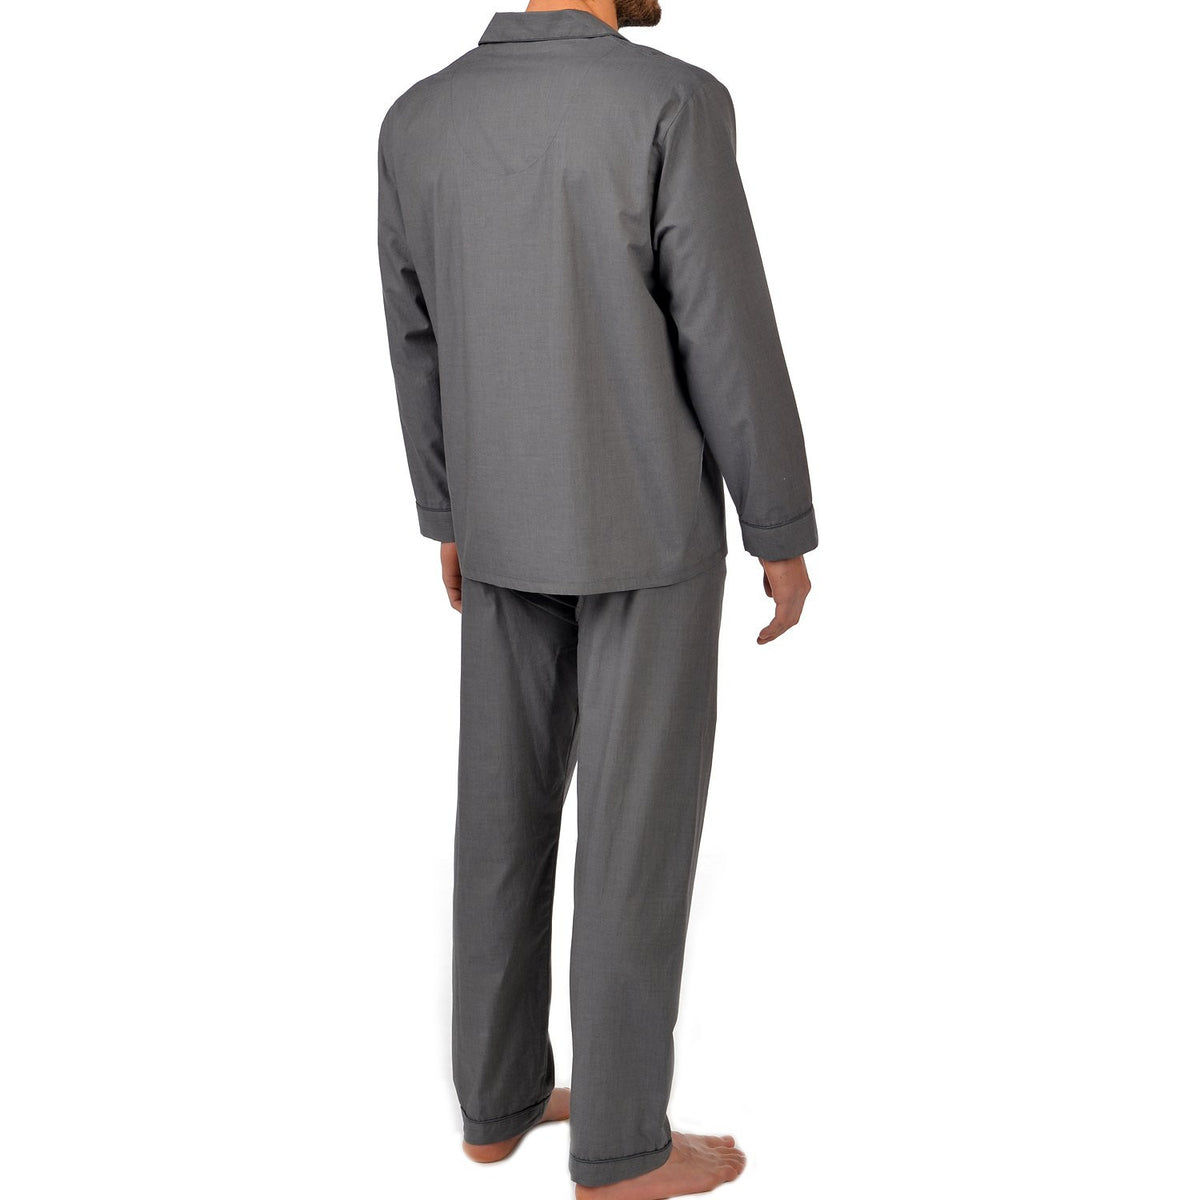 Pijama de algodón de manga larga en color carbón